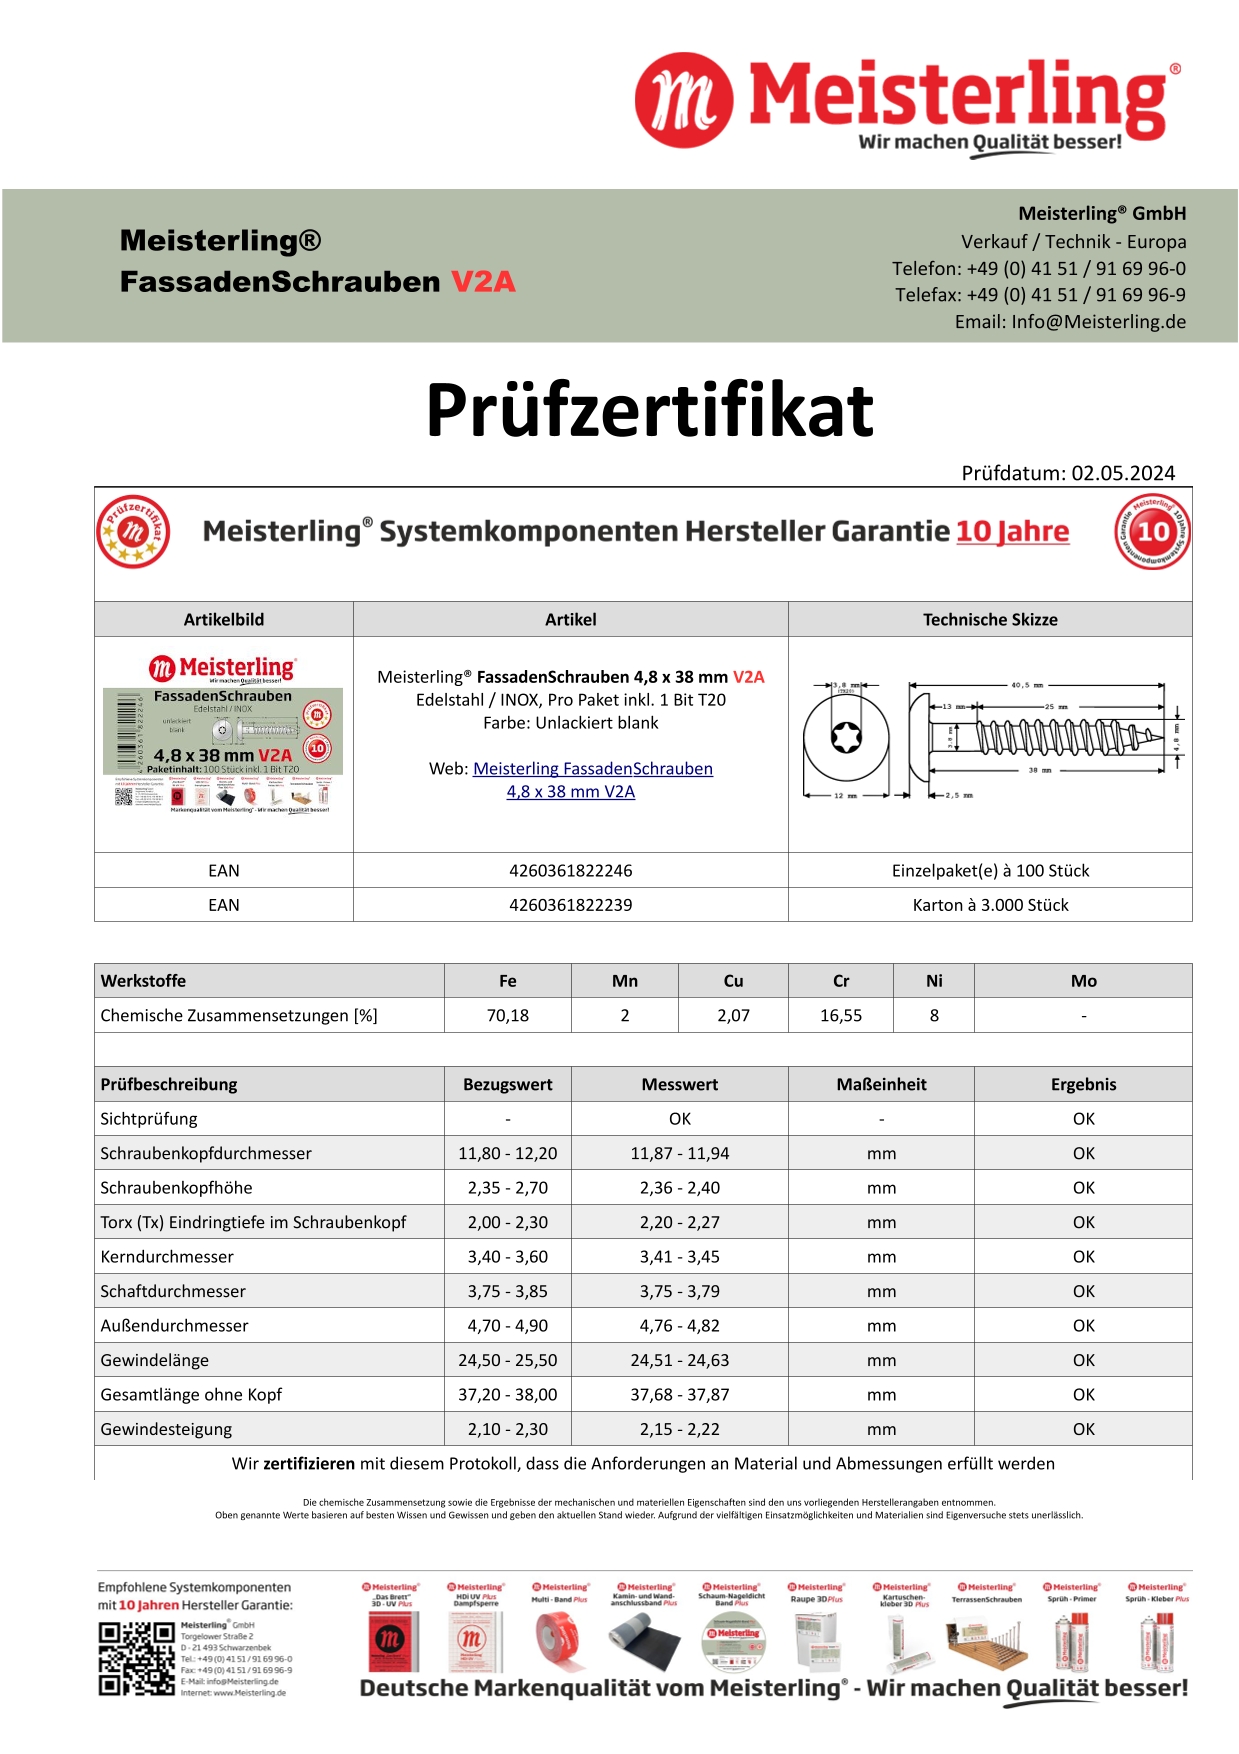 Prüfzertifikat Meisterling® FassadenSchrauben 4,8 x 38 mm V2a unlackiert blank